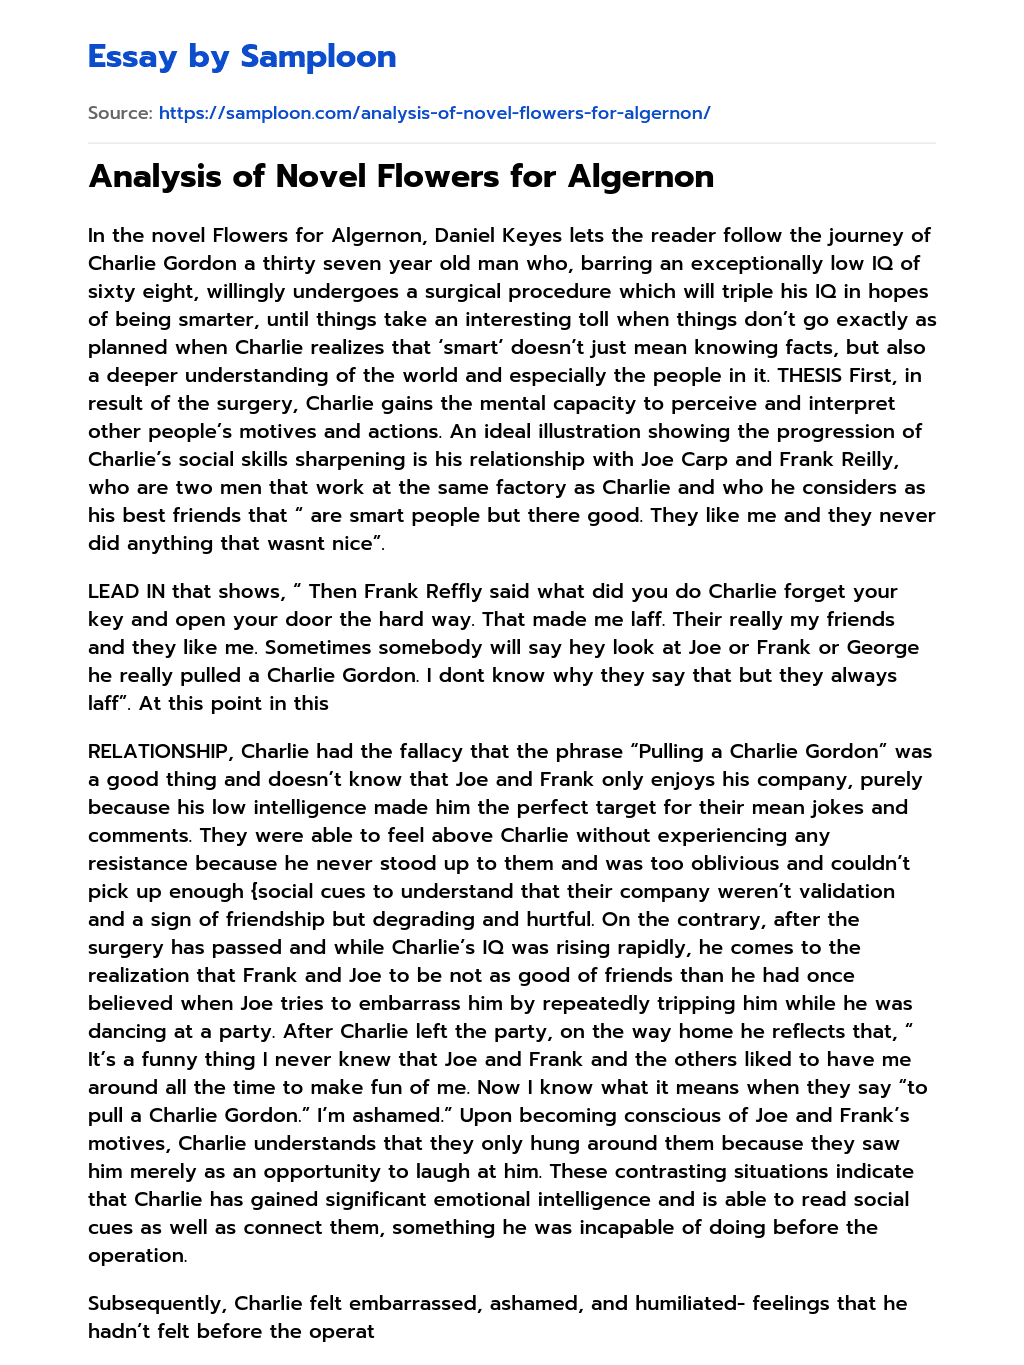 Analysis of Novel Flowers for Algernon essay